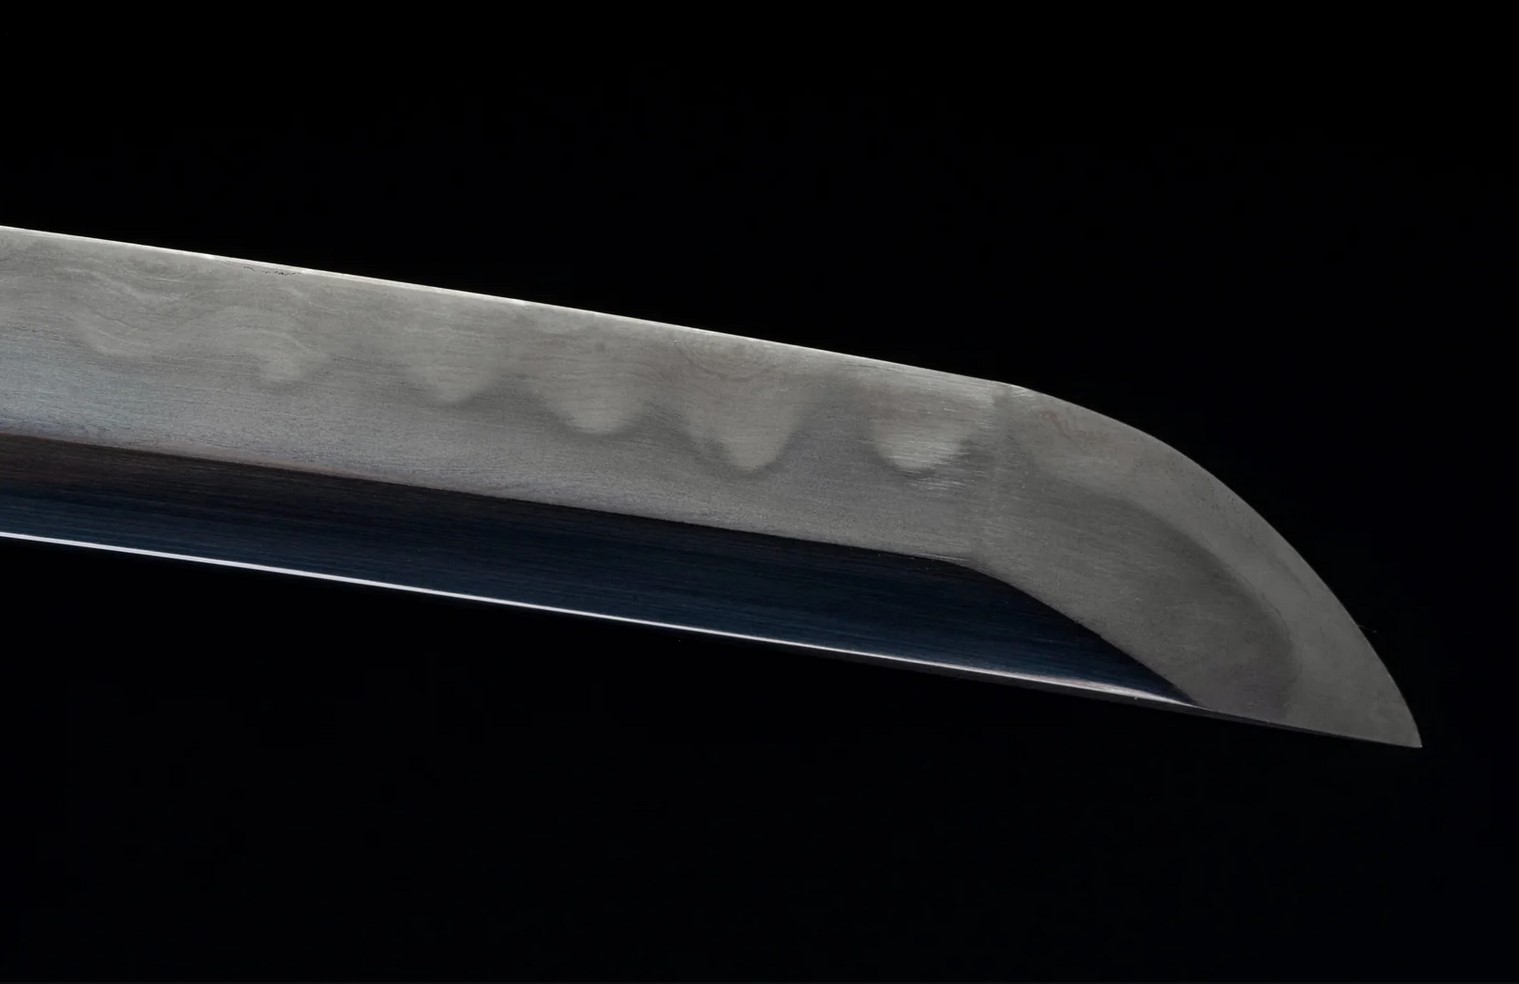 Amourer's Katana, 72.39 cm blade length, 27.94 cm handle length